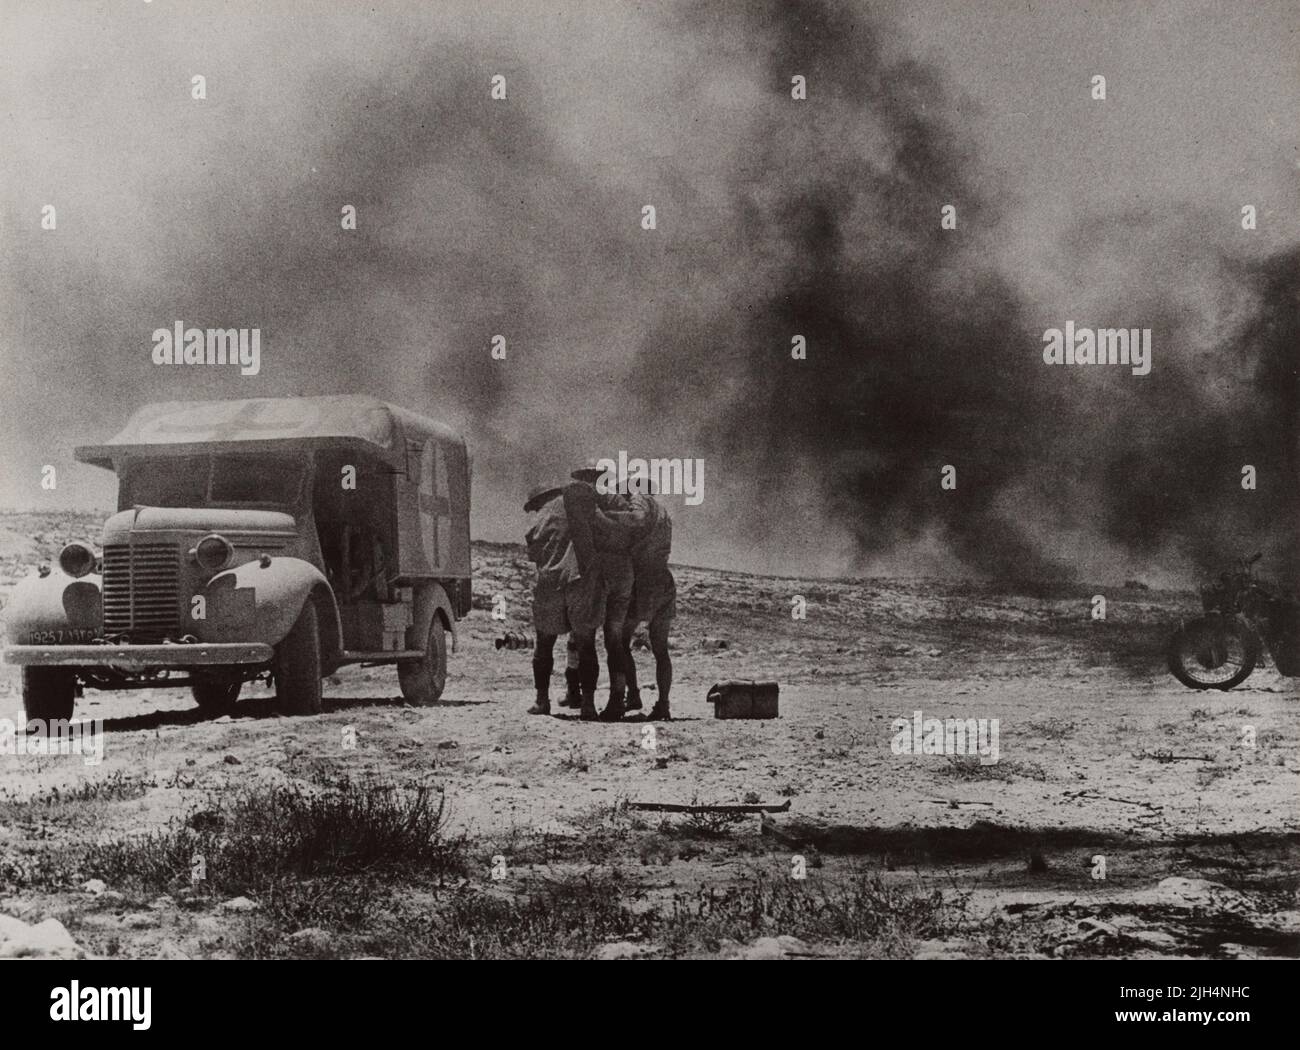 Una foto d'epoca del 1941 che mostra due medici del corpo medico dell'esercito reale aiutando un soldato ferito ad un'ambulanza sul campo dipinta con una Croce Rossa dopo che le forze dell'asse hanno attaccato un convoglio medico nel deserto occidentale del Nord Africa Foto Stock